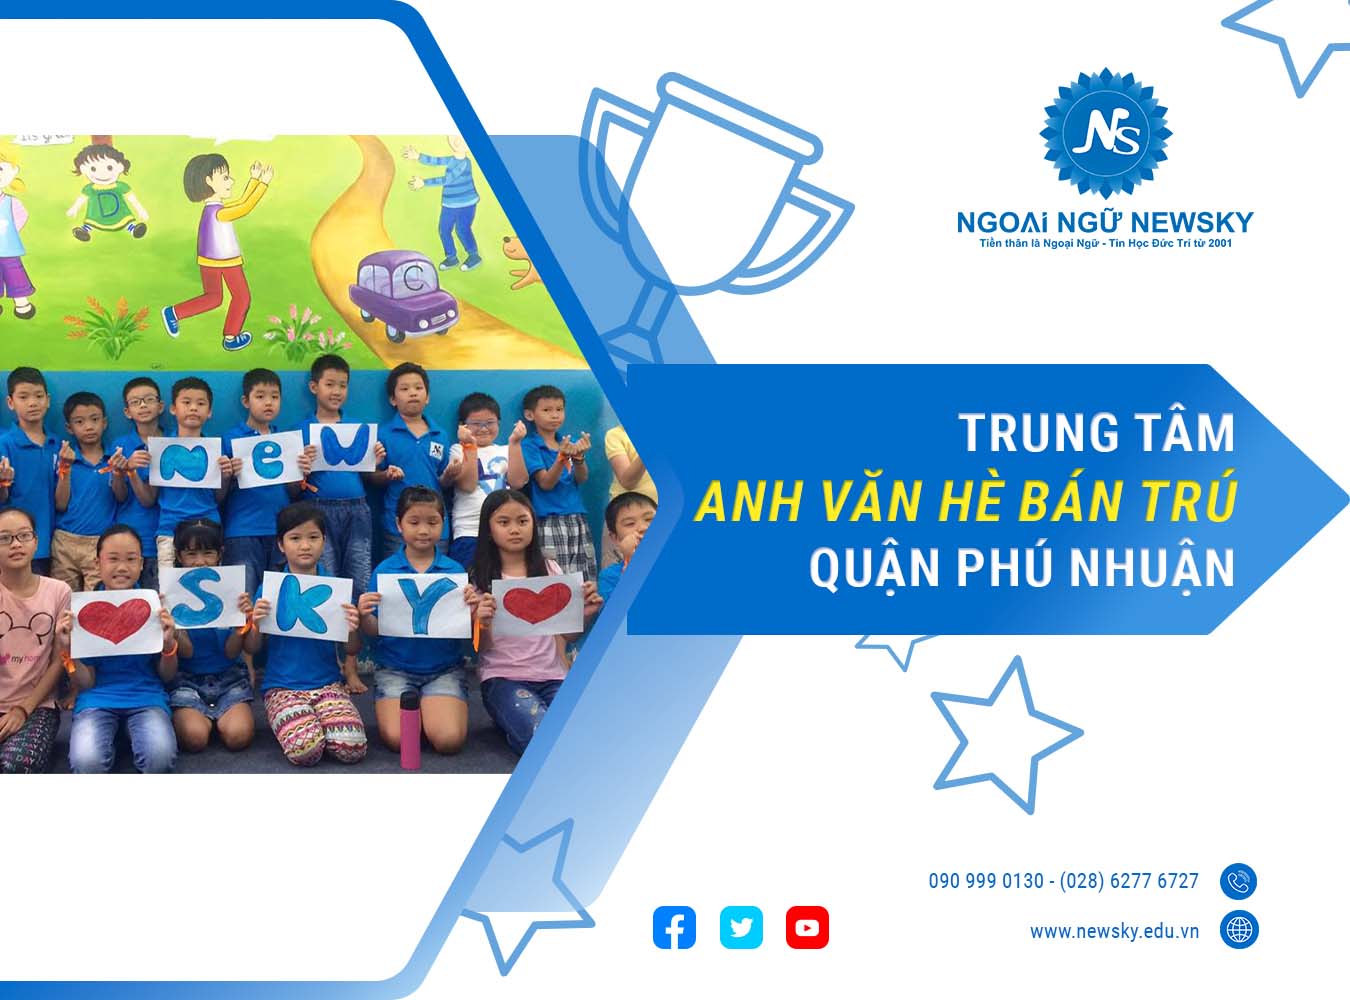 Trung tâm dạy Anh Văn hè Bán trú Quận Phú Nhuận